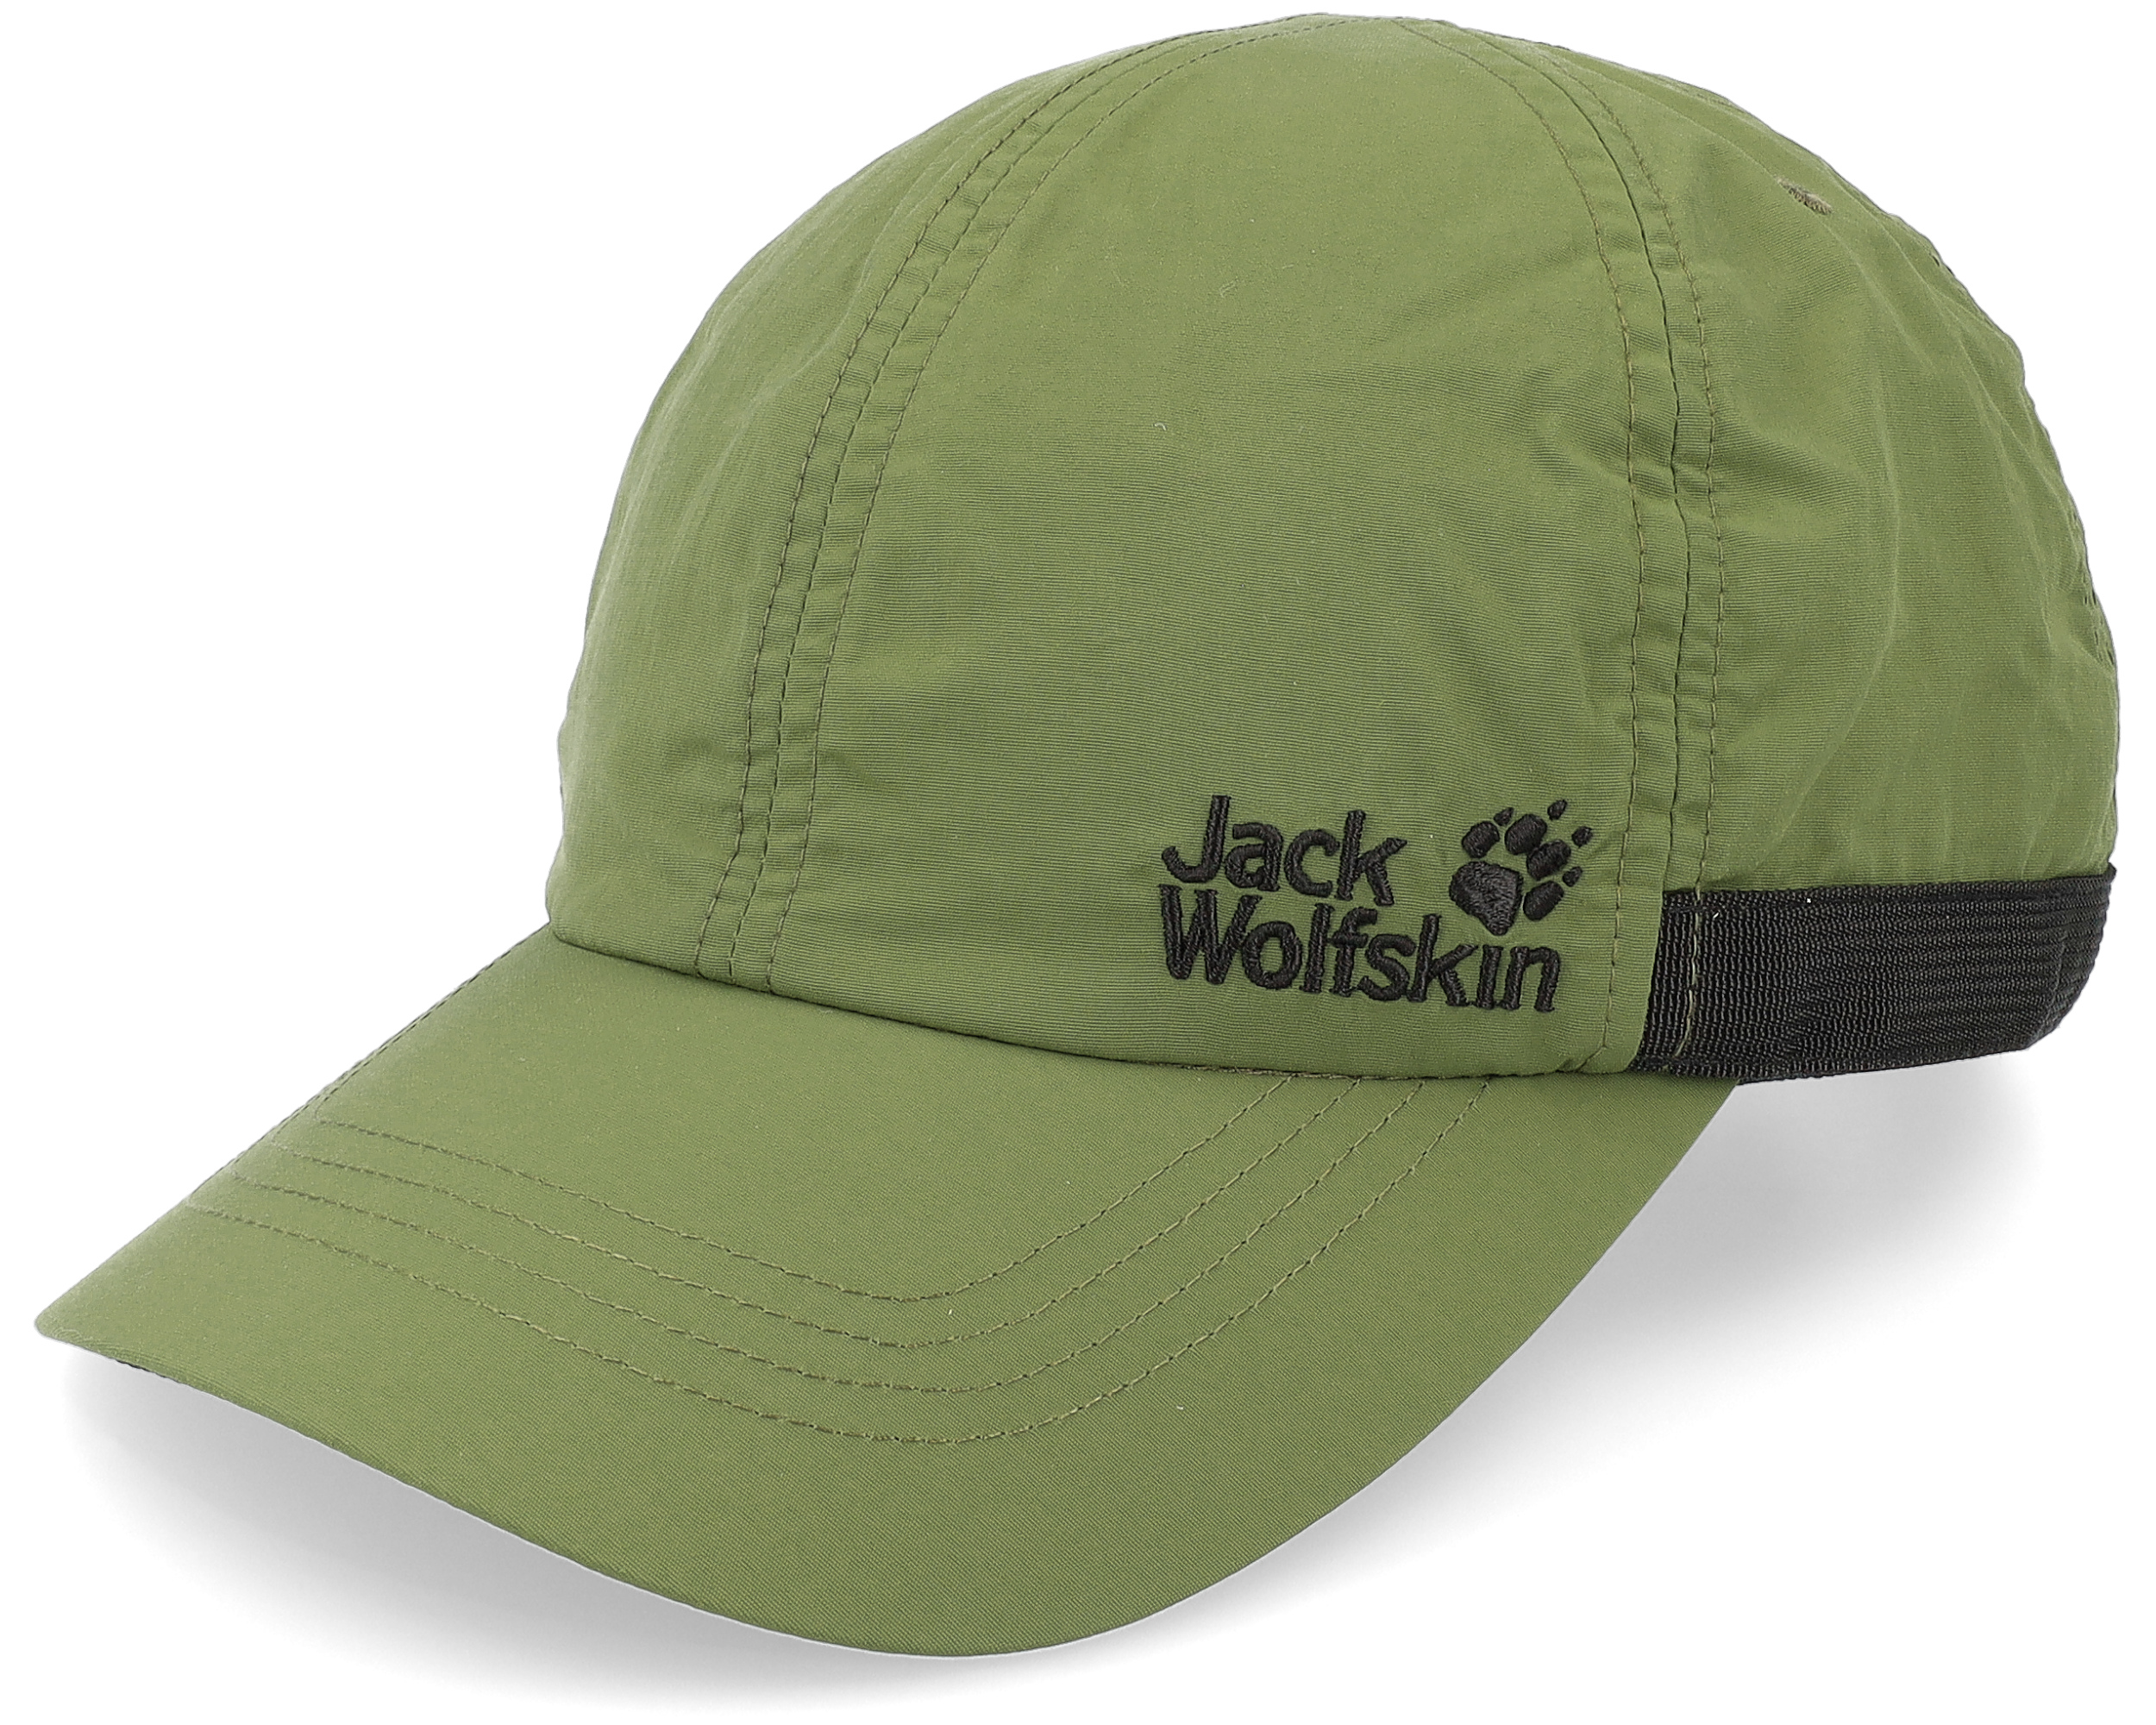 Supplex Strap Greenwood Dad Cap - Jack Wolfskin cap